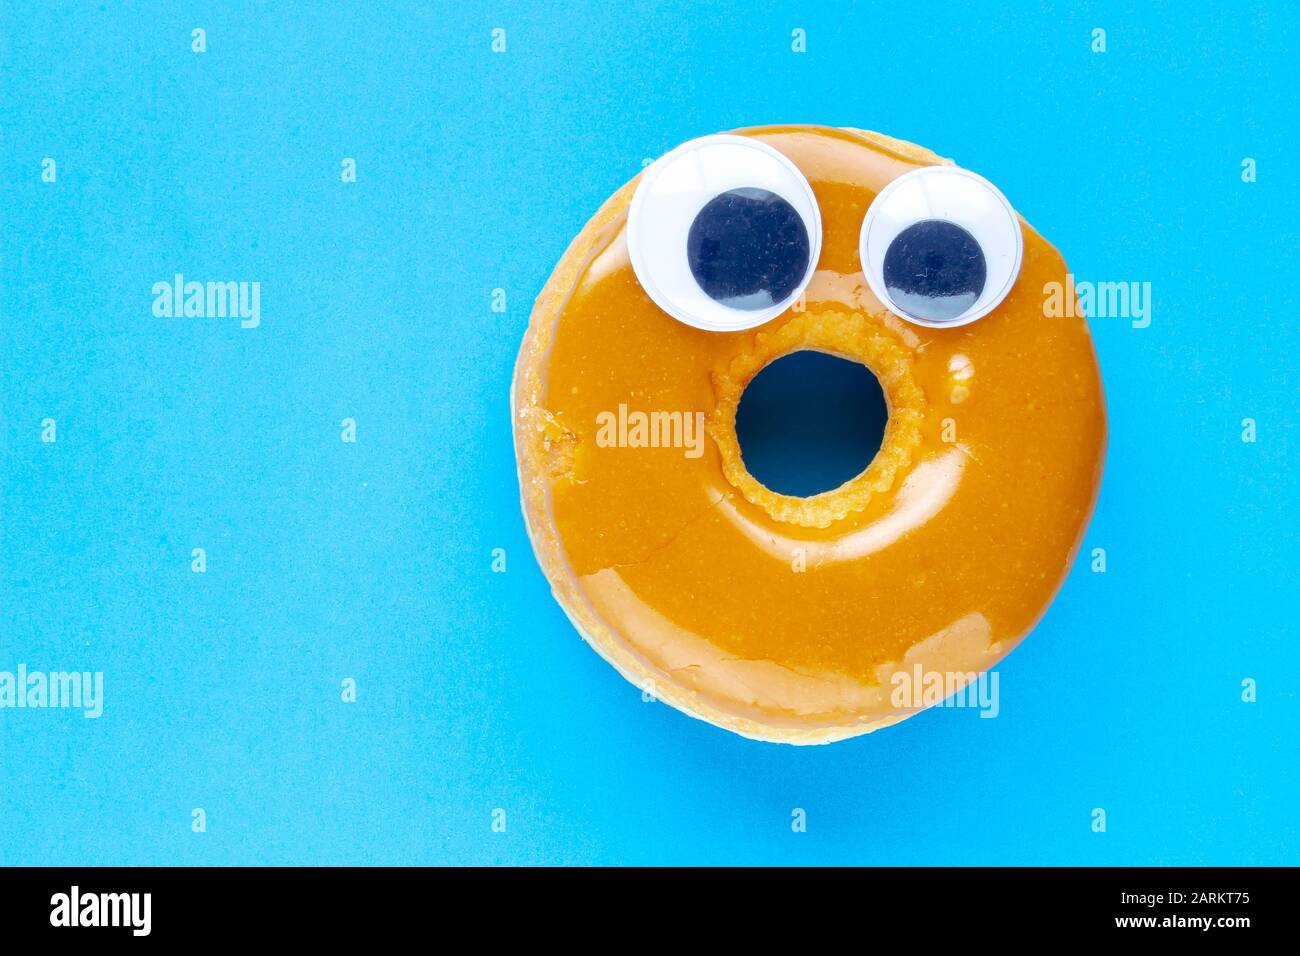 Un Tuffo canadese dell'acero Donut con I Eyeballs neri del wiggle googly su uno sfondo blu Foto Stock